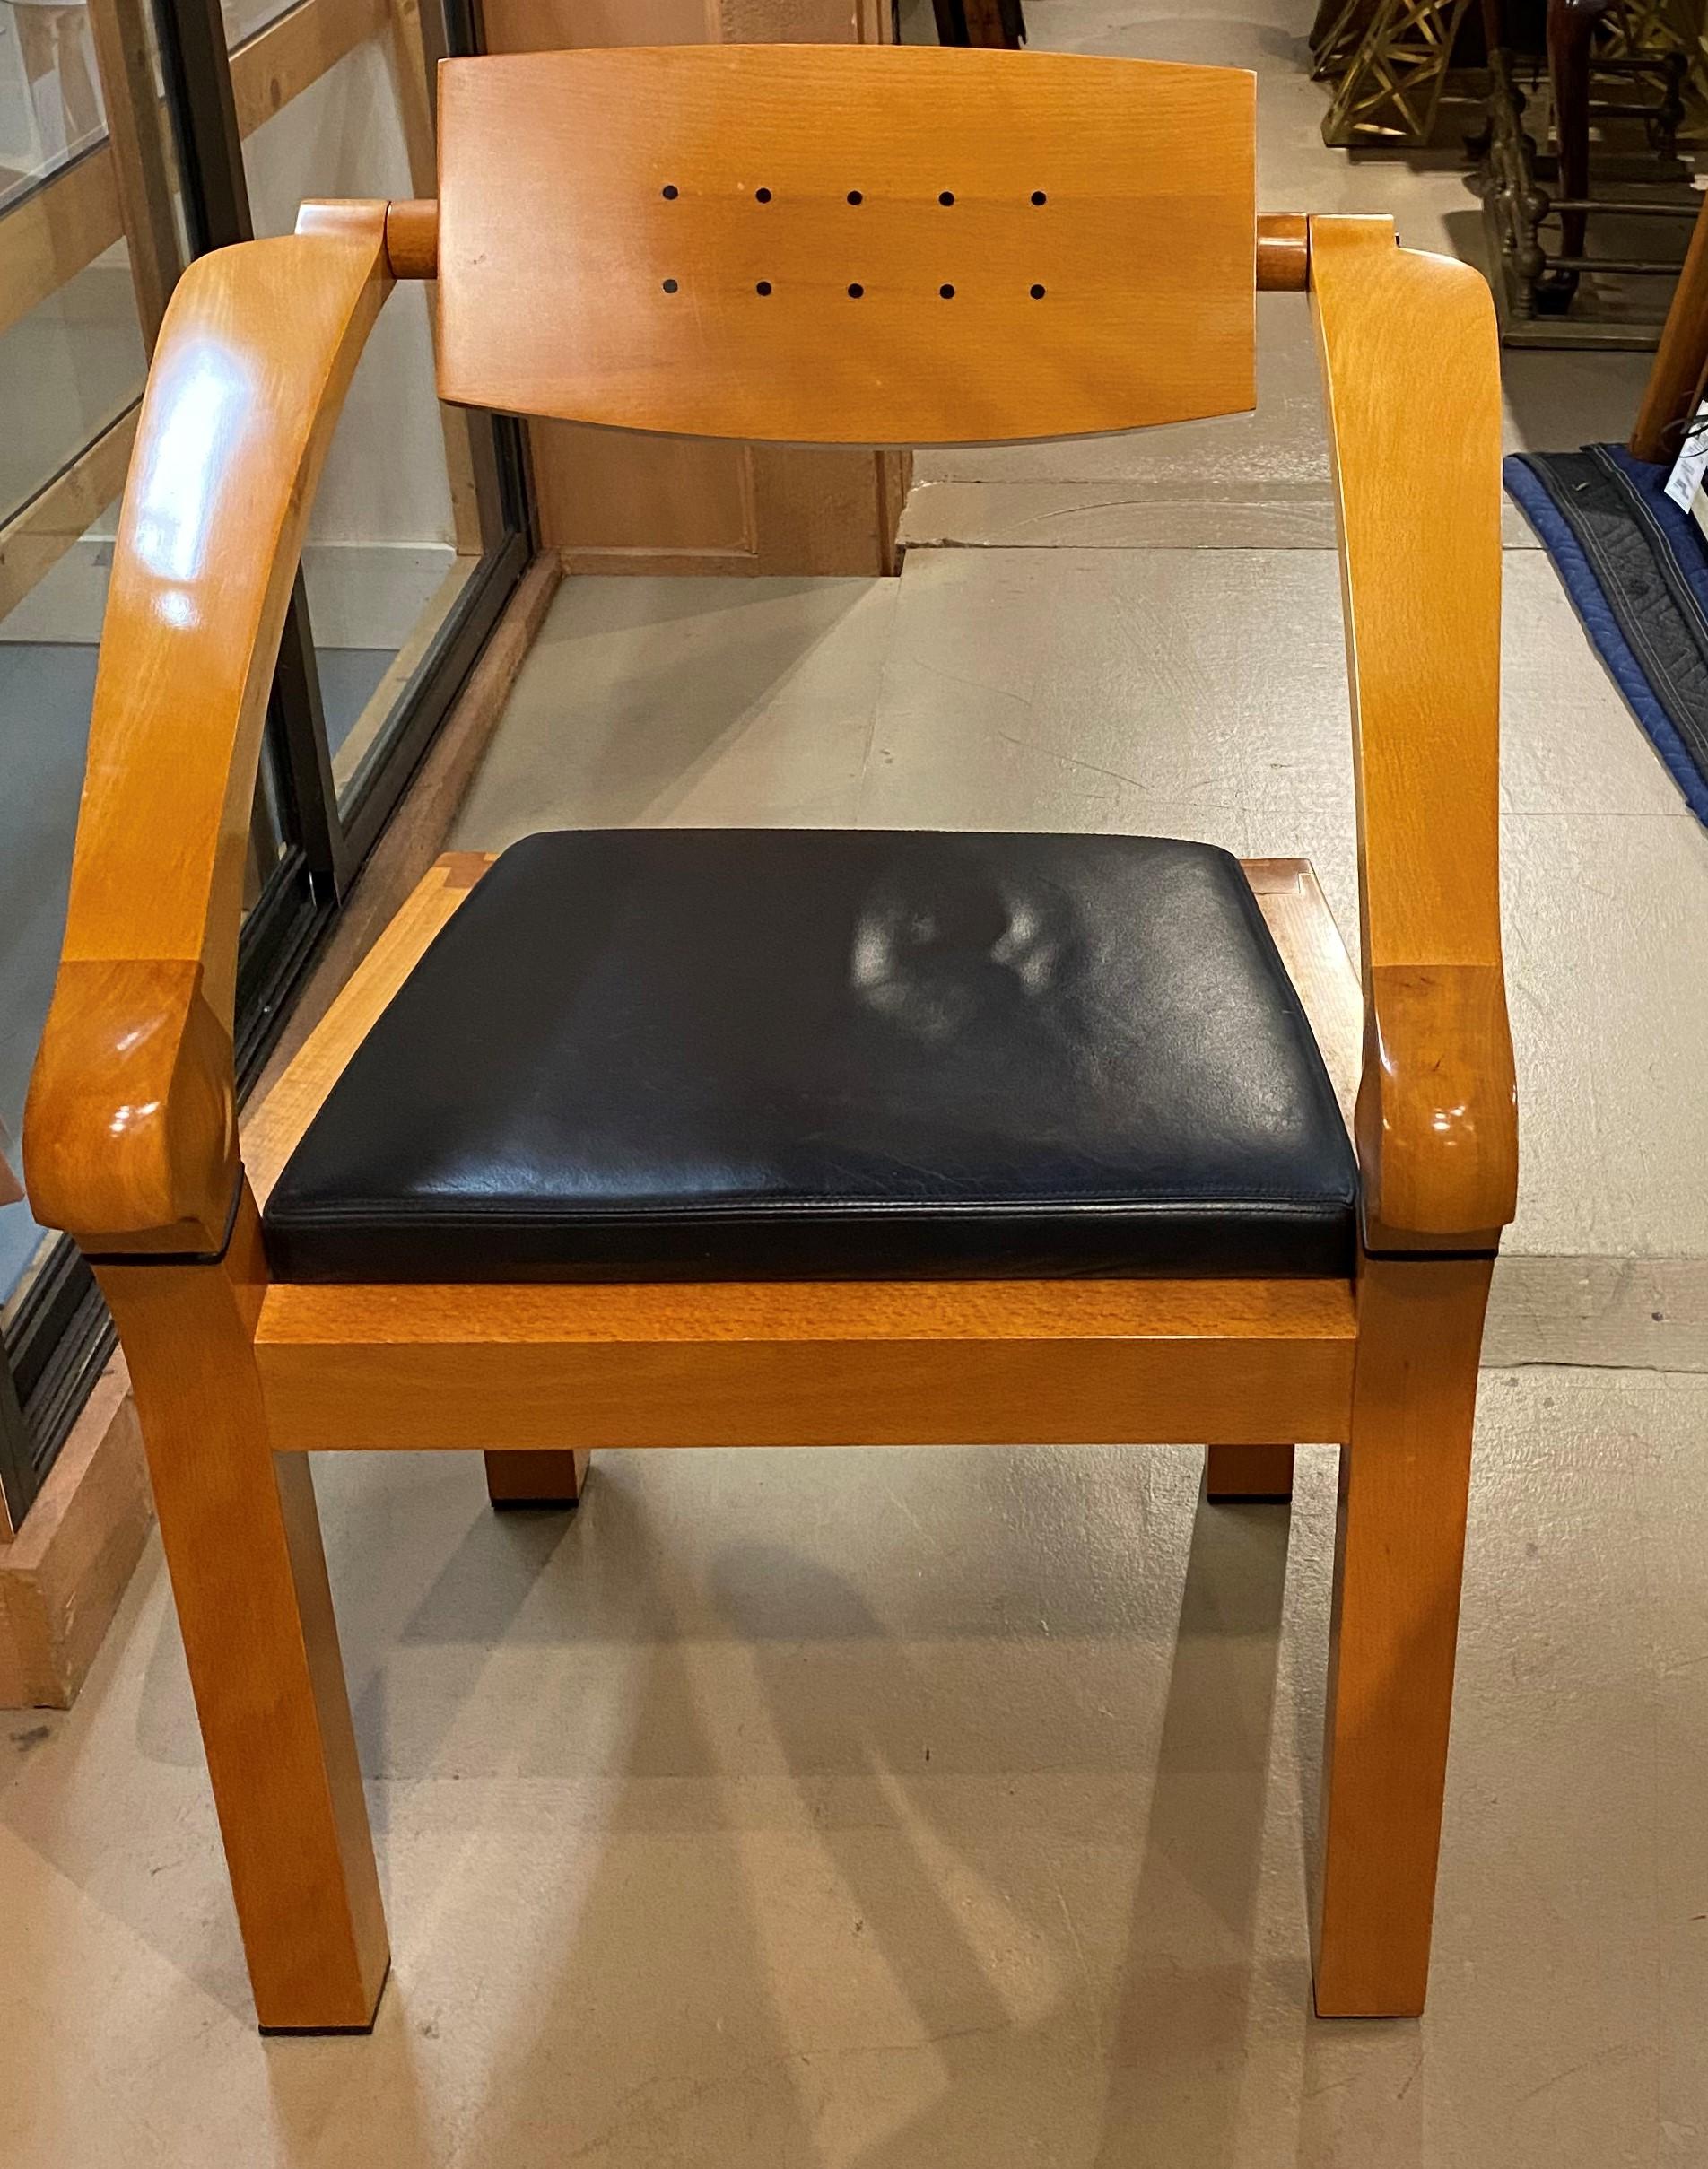 Chaise de bureau à ressort au design épuré, en hêtre poli et ébène, avec assise en cuir et dossier réglable, conçue par Massimo Scholari pour Beeche, vers les années 1990. Le nom du designer apparaît sur l'étiquette en laiton Giorgetti située sous